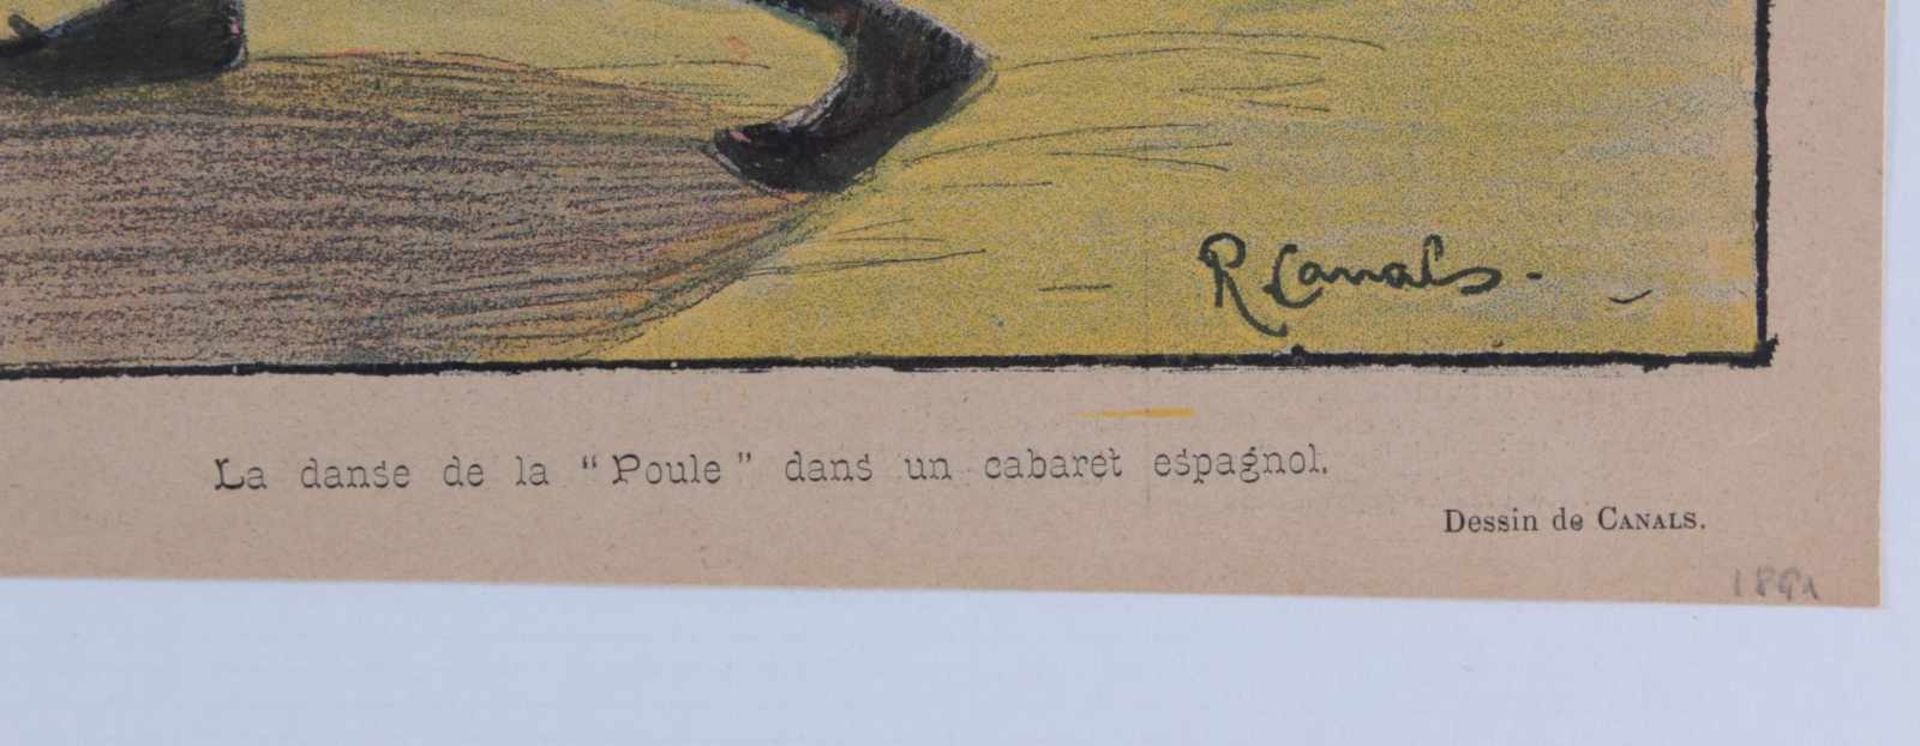 Canals, Ricardo. Spanischer Maler (1876-1931)Tätig in Paris. „La danse de la Poule„. Hühnertanz im - Bild 3 aus 3